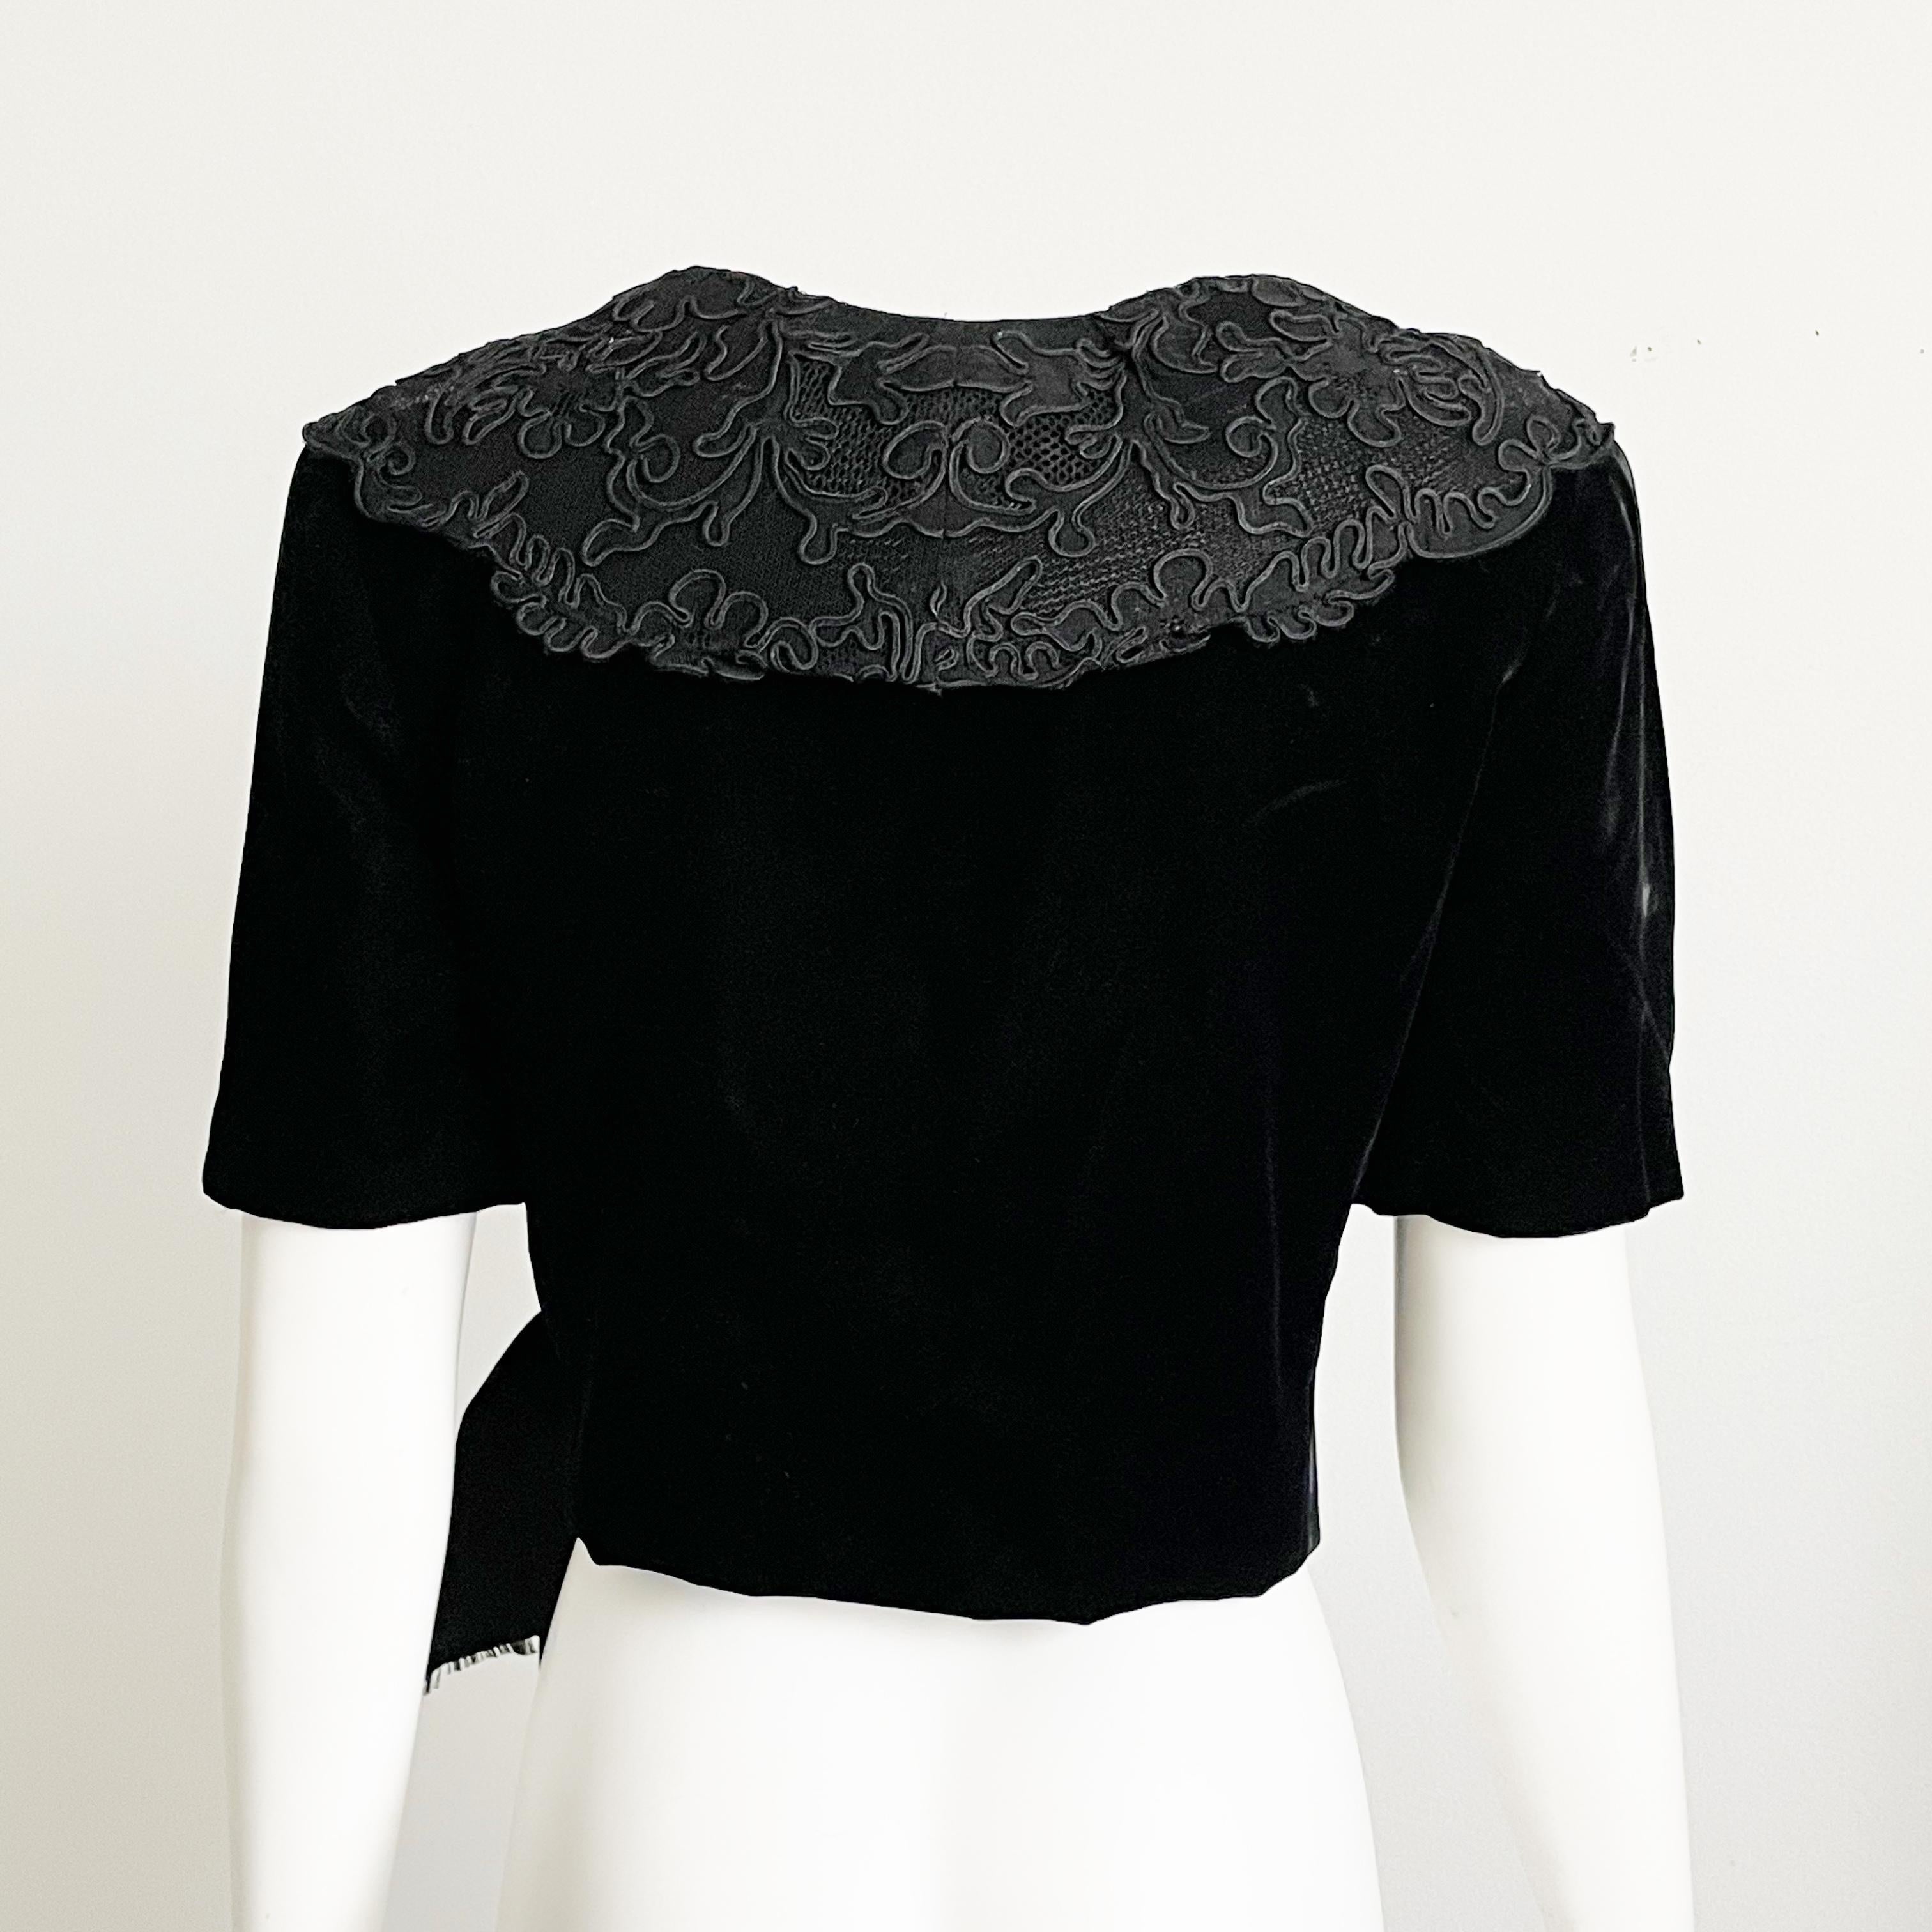 Jacqueline de Ribes Jacket Bolero Cropped Formal Couture Black Lace Velvet  For Sale 4